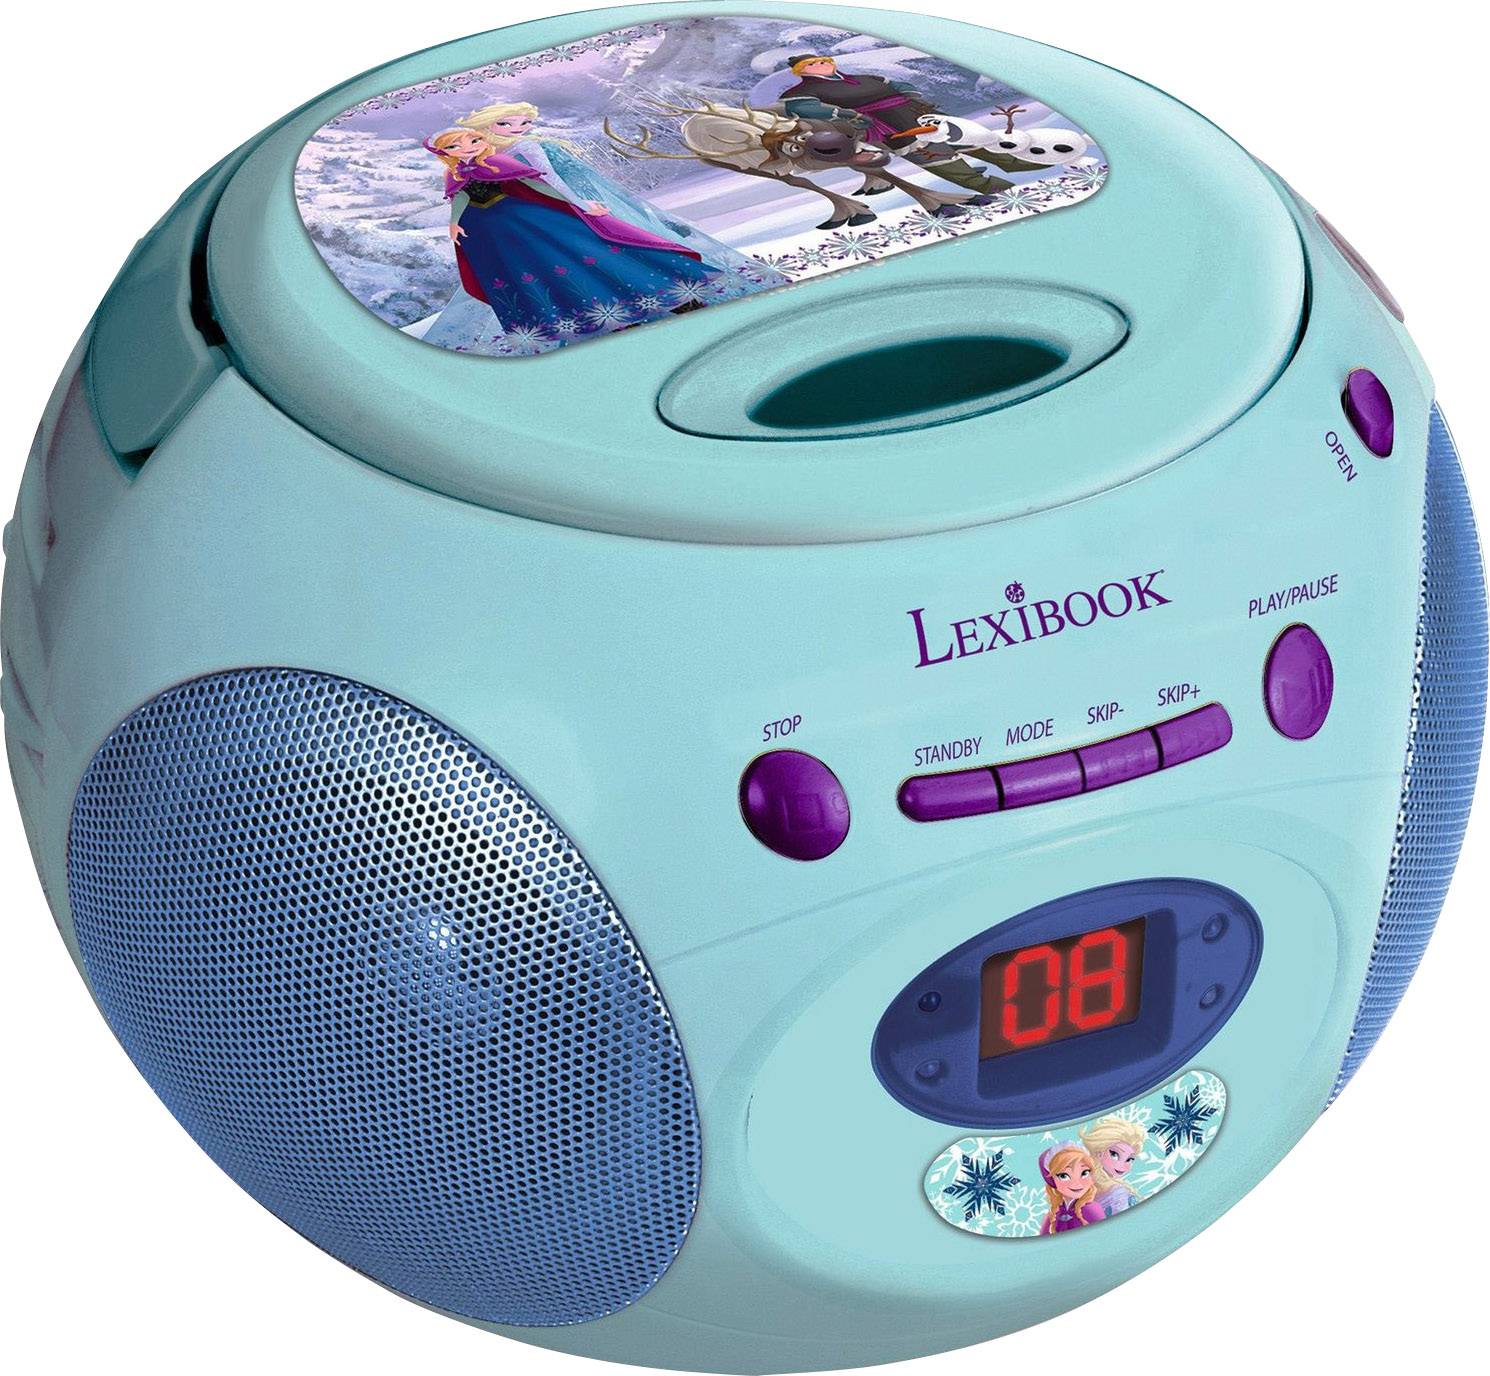 Lexibook CD player | Conrad.com